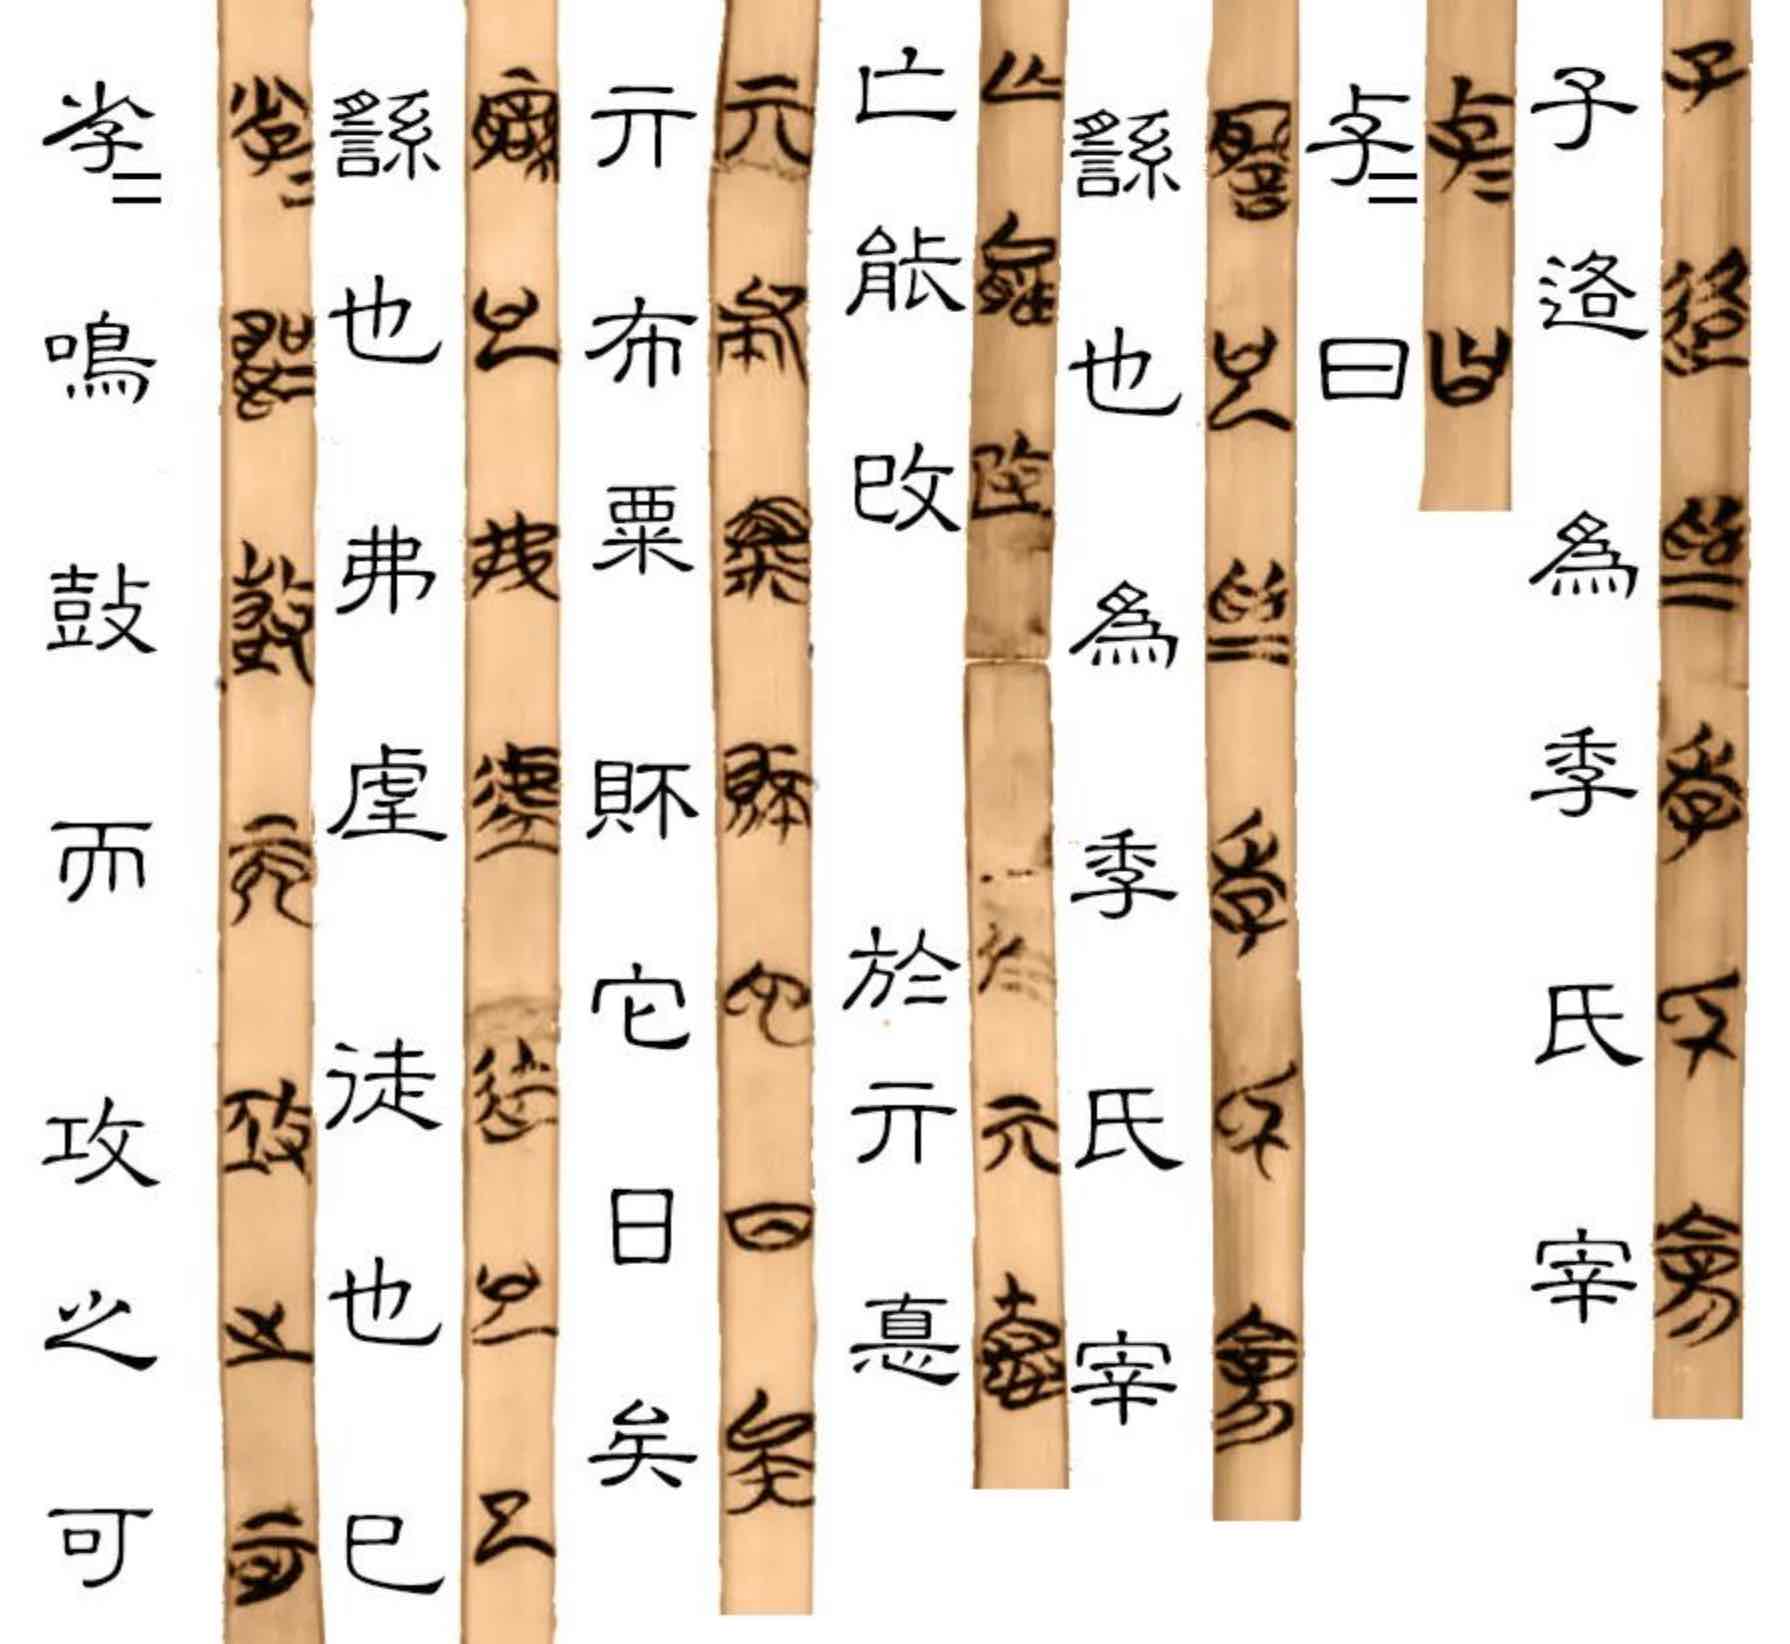 강연영상 ❬고대 중국의 텍스트 형성과 전승: 『논어』의 사례연구(case study)를 통한 비판적 접근❭